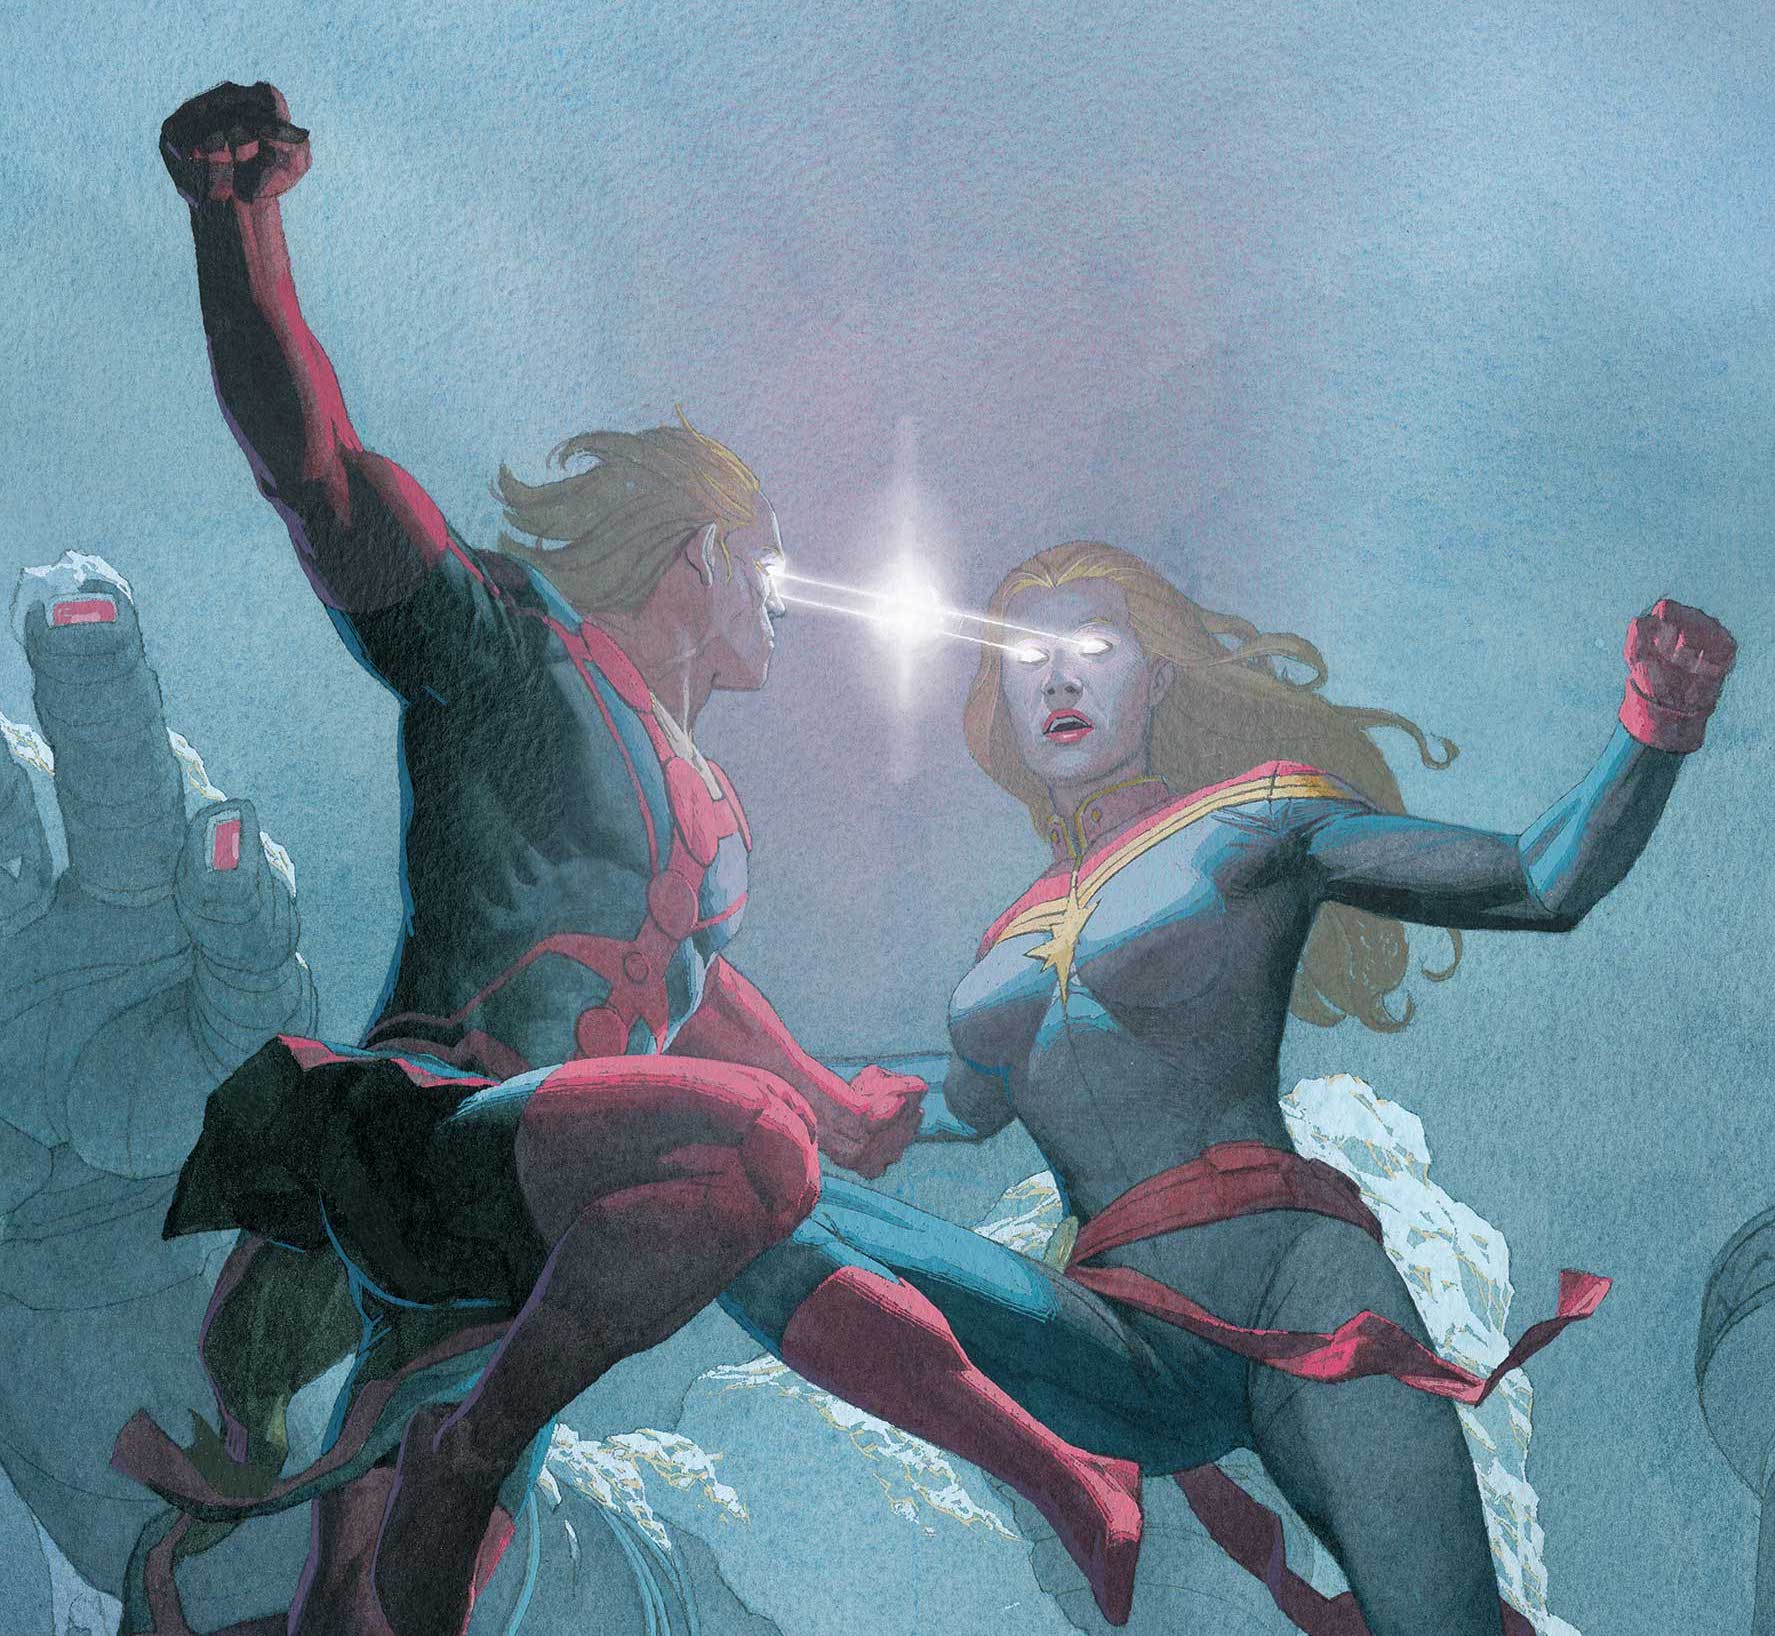 Marvel teases Avengers vs. Eternals in March 2022